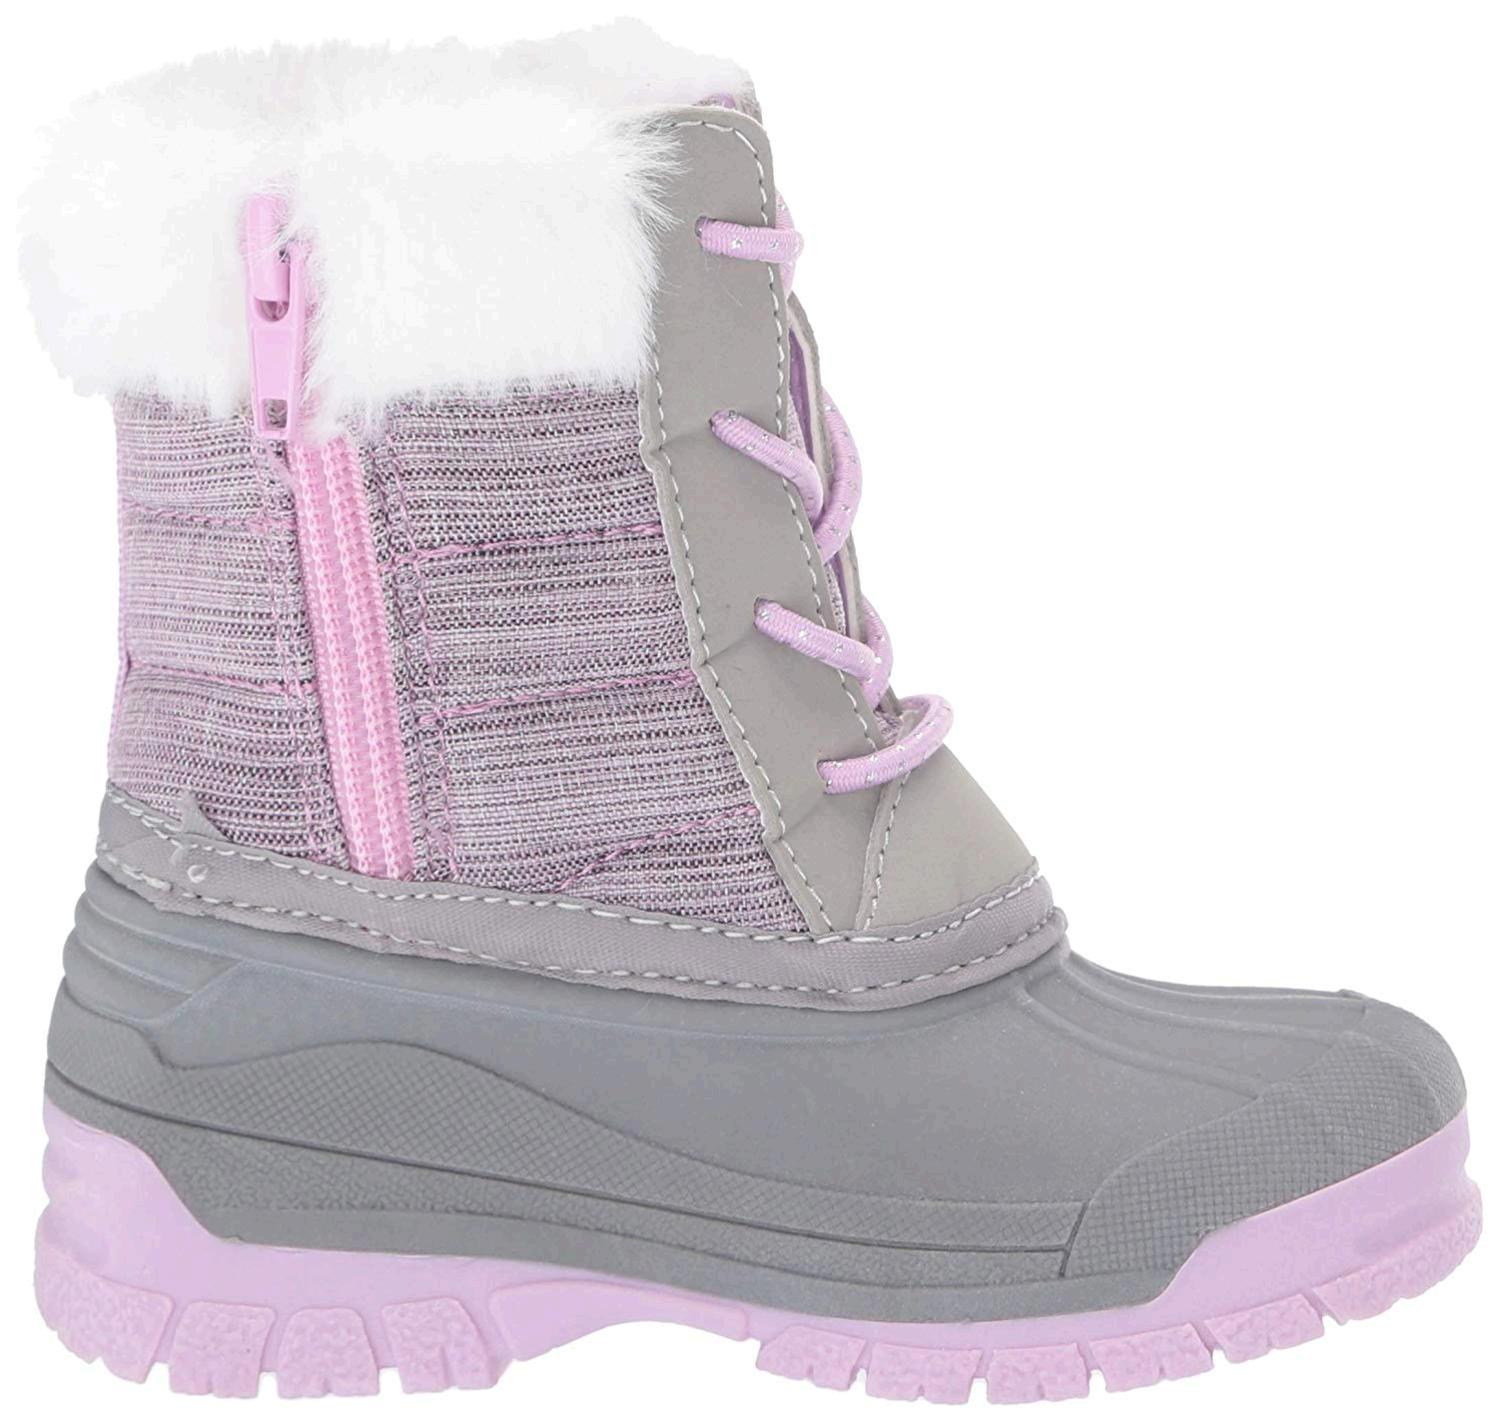 OshKosh B'Gosh Kids' SNOE Fashion Boot, Purple, Size 0.0 TkY6 | eBay